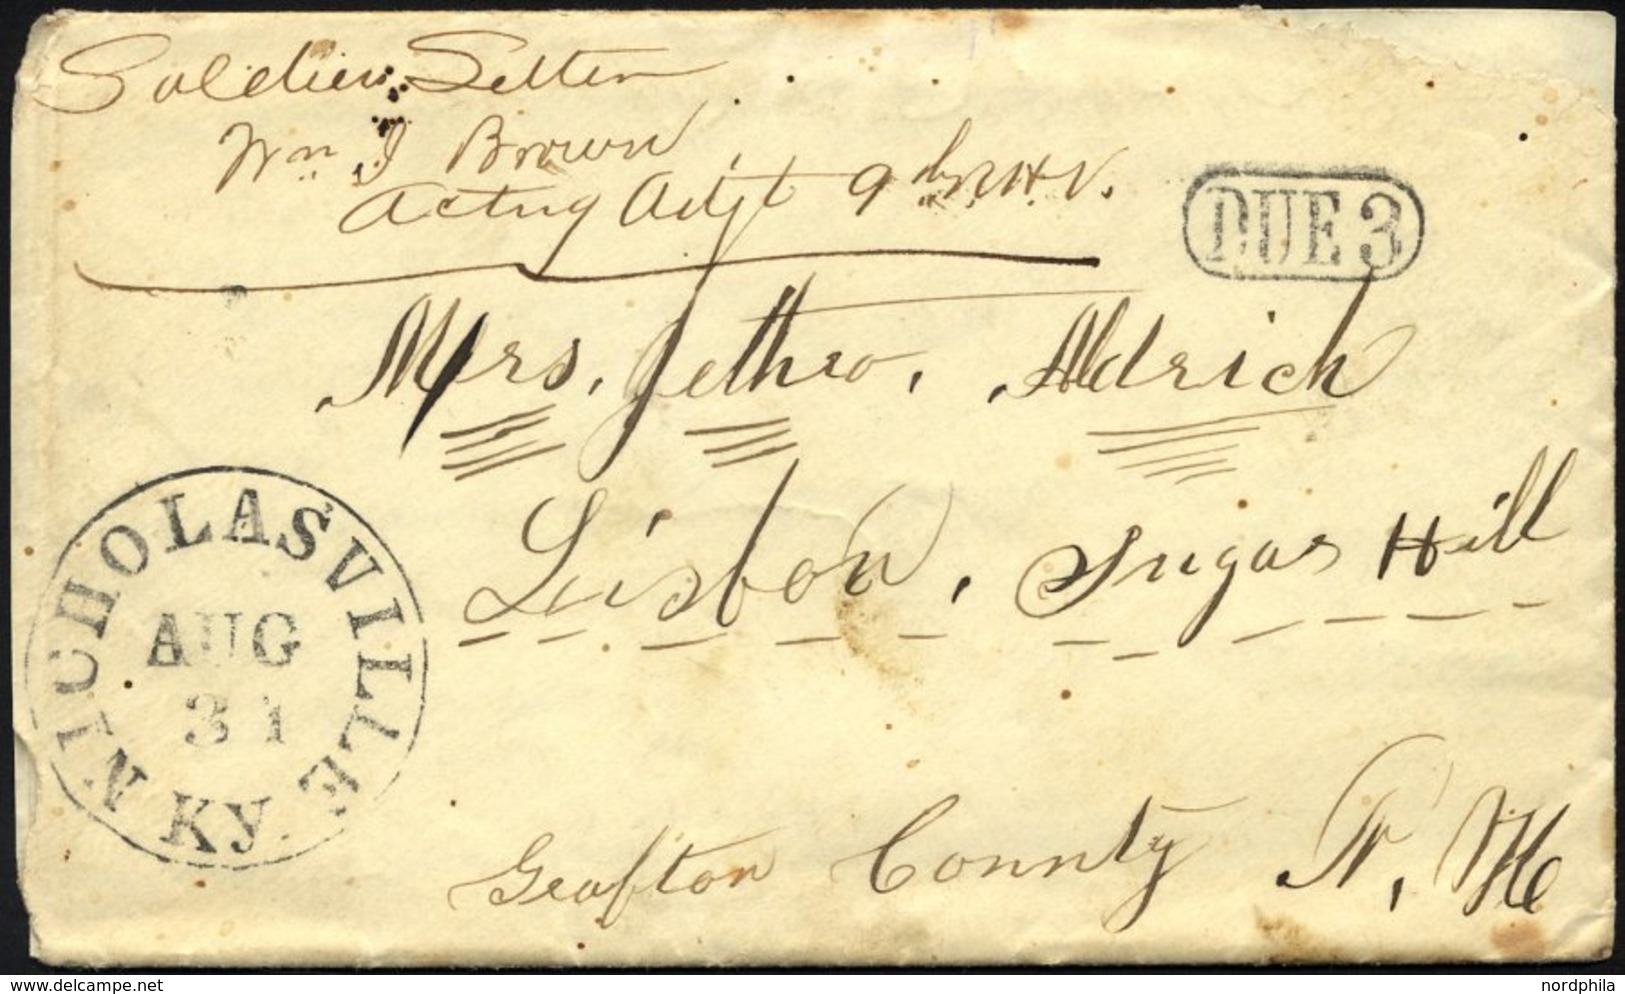 FELDPOST 1863, Soldatenbrief Aus Nicholasville Mit Schwarzem K1, Feinst, RR! - Used Stamps